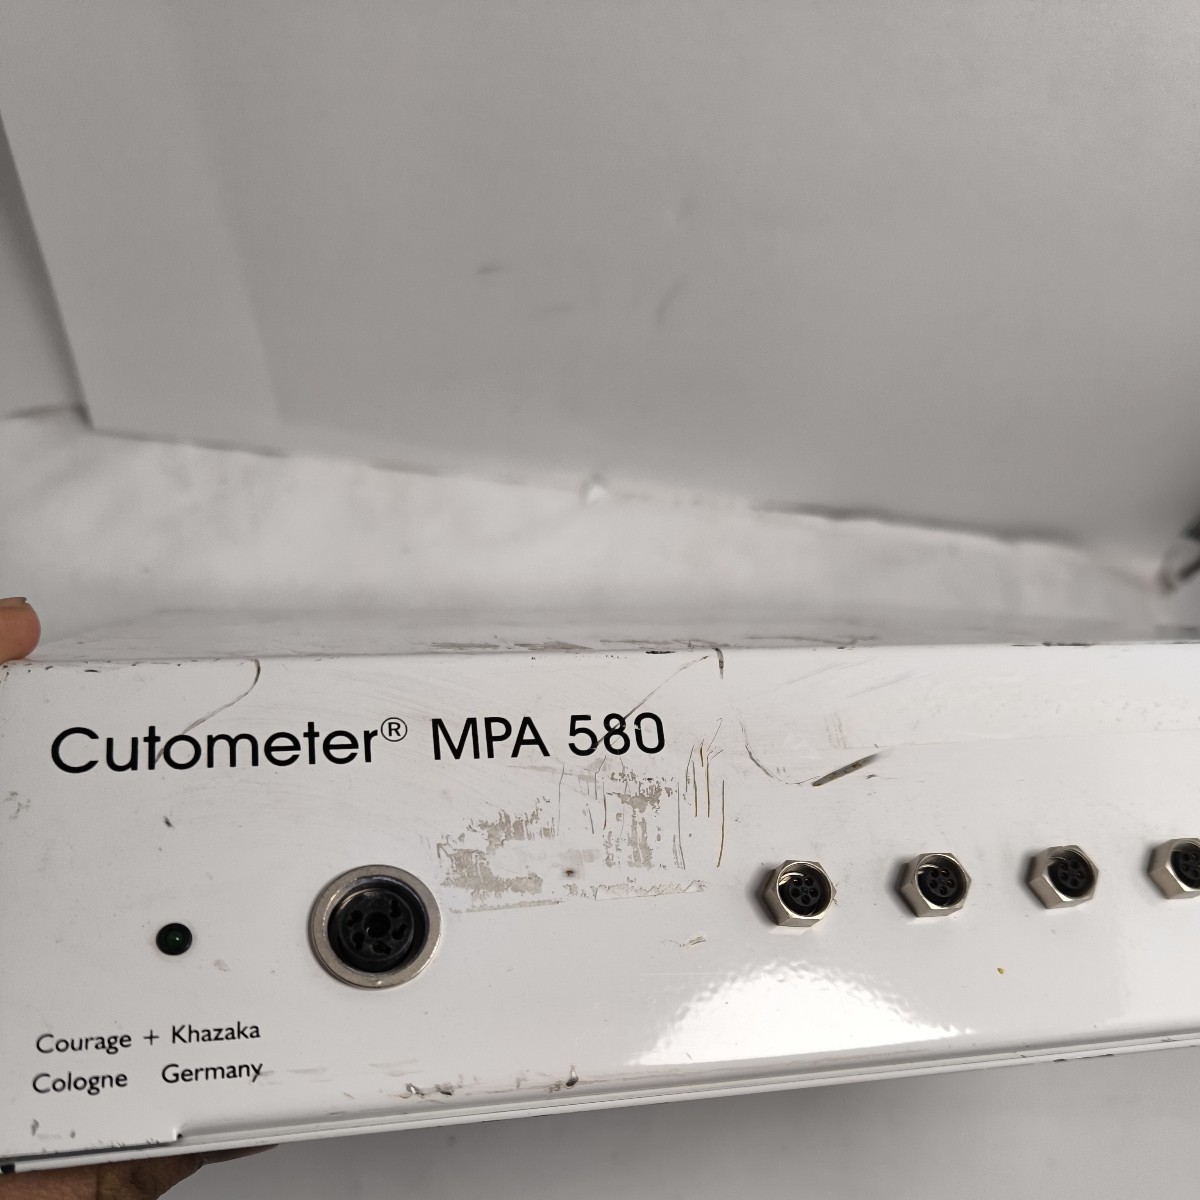 [2FX26]Cutometer MPA 580 integral кожа ... измерительный прибор? текущее состояние корпус только Junk лот 